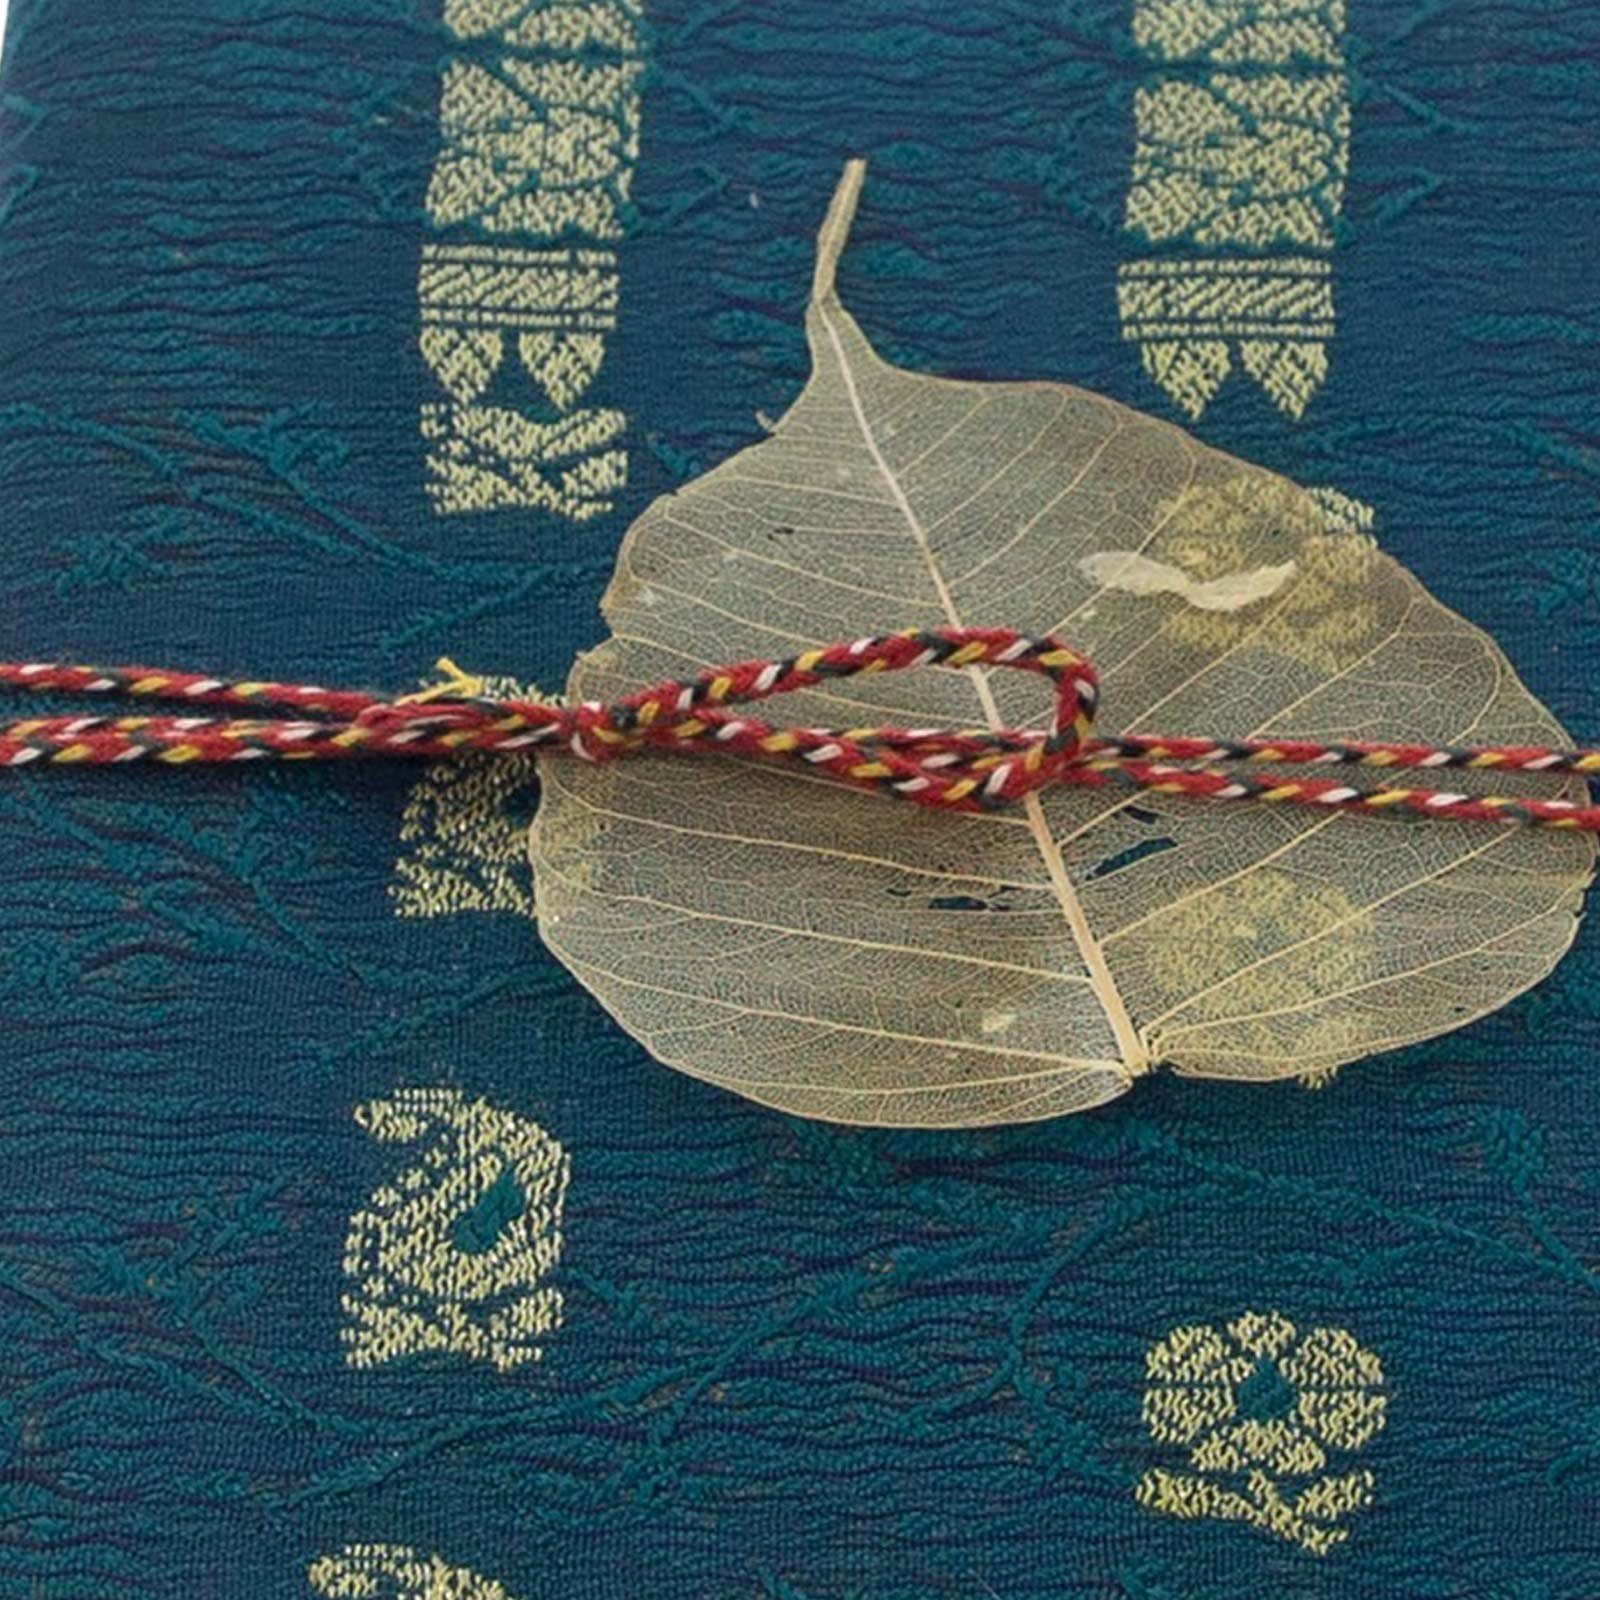 KUNST UND MAGIE Tagebuch Tagebuch Sari Indien Poesiealbum Nachhaltig Baumwollpapier-Notizbuch